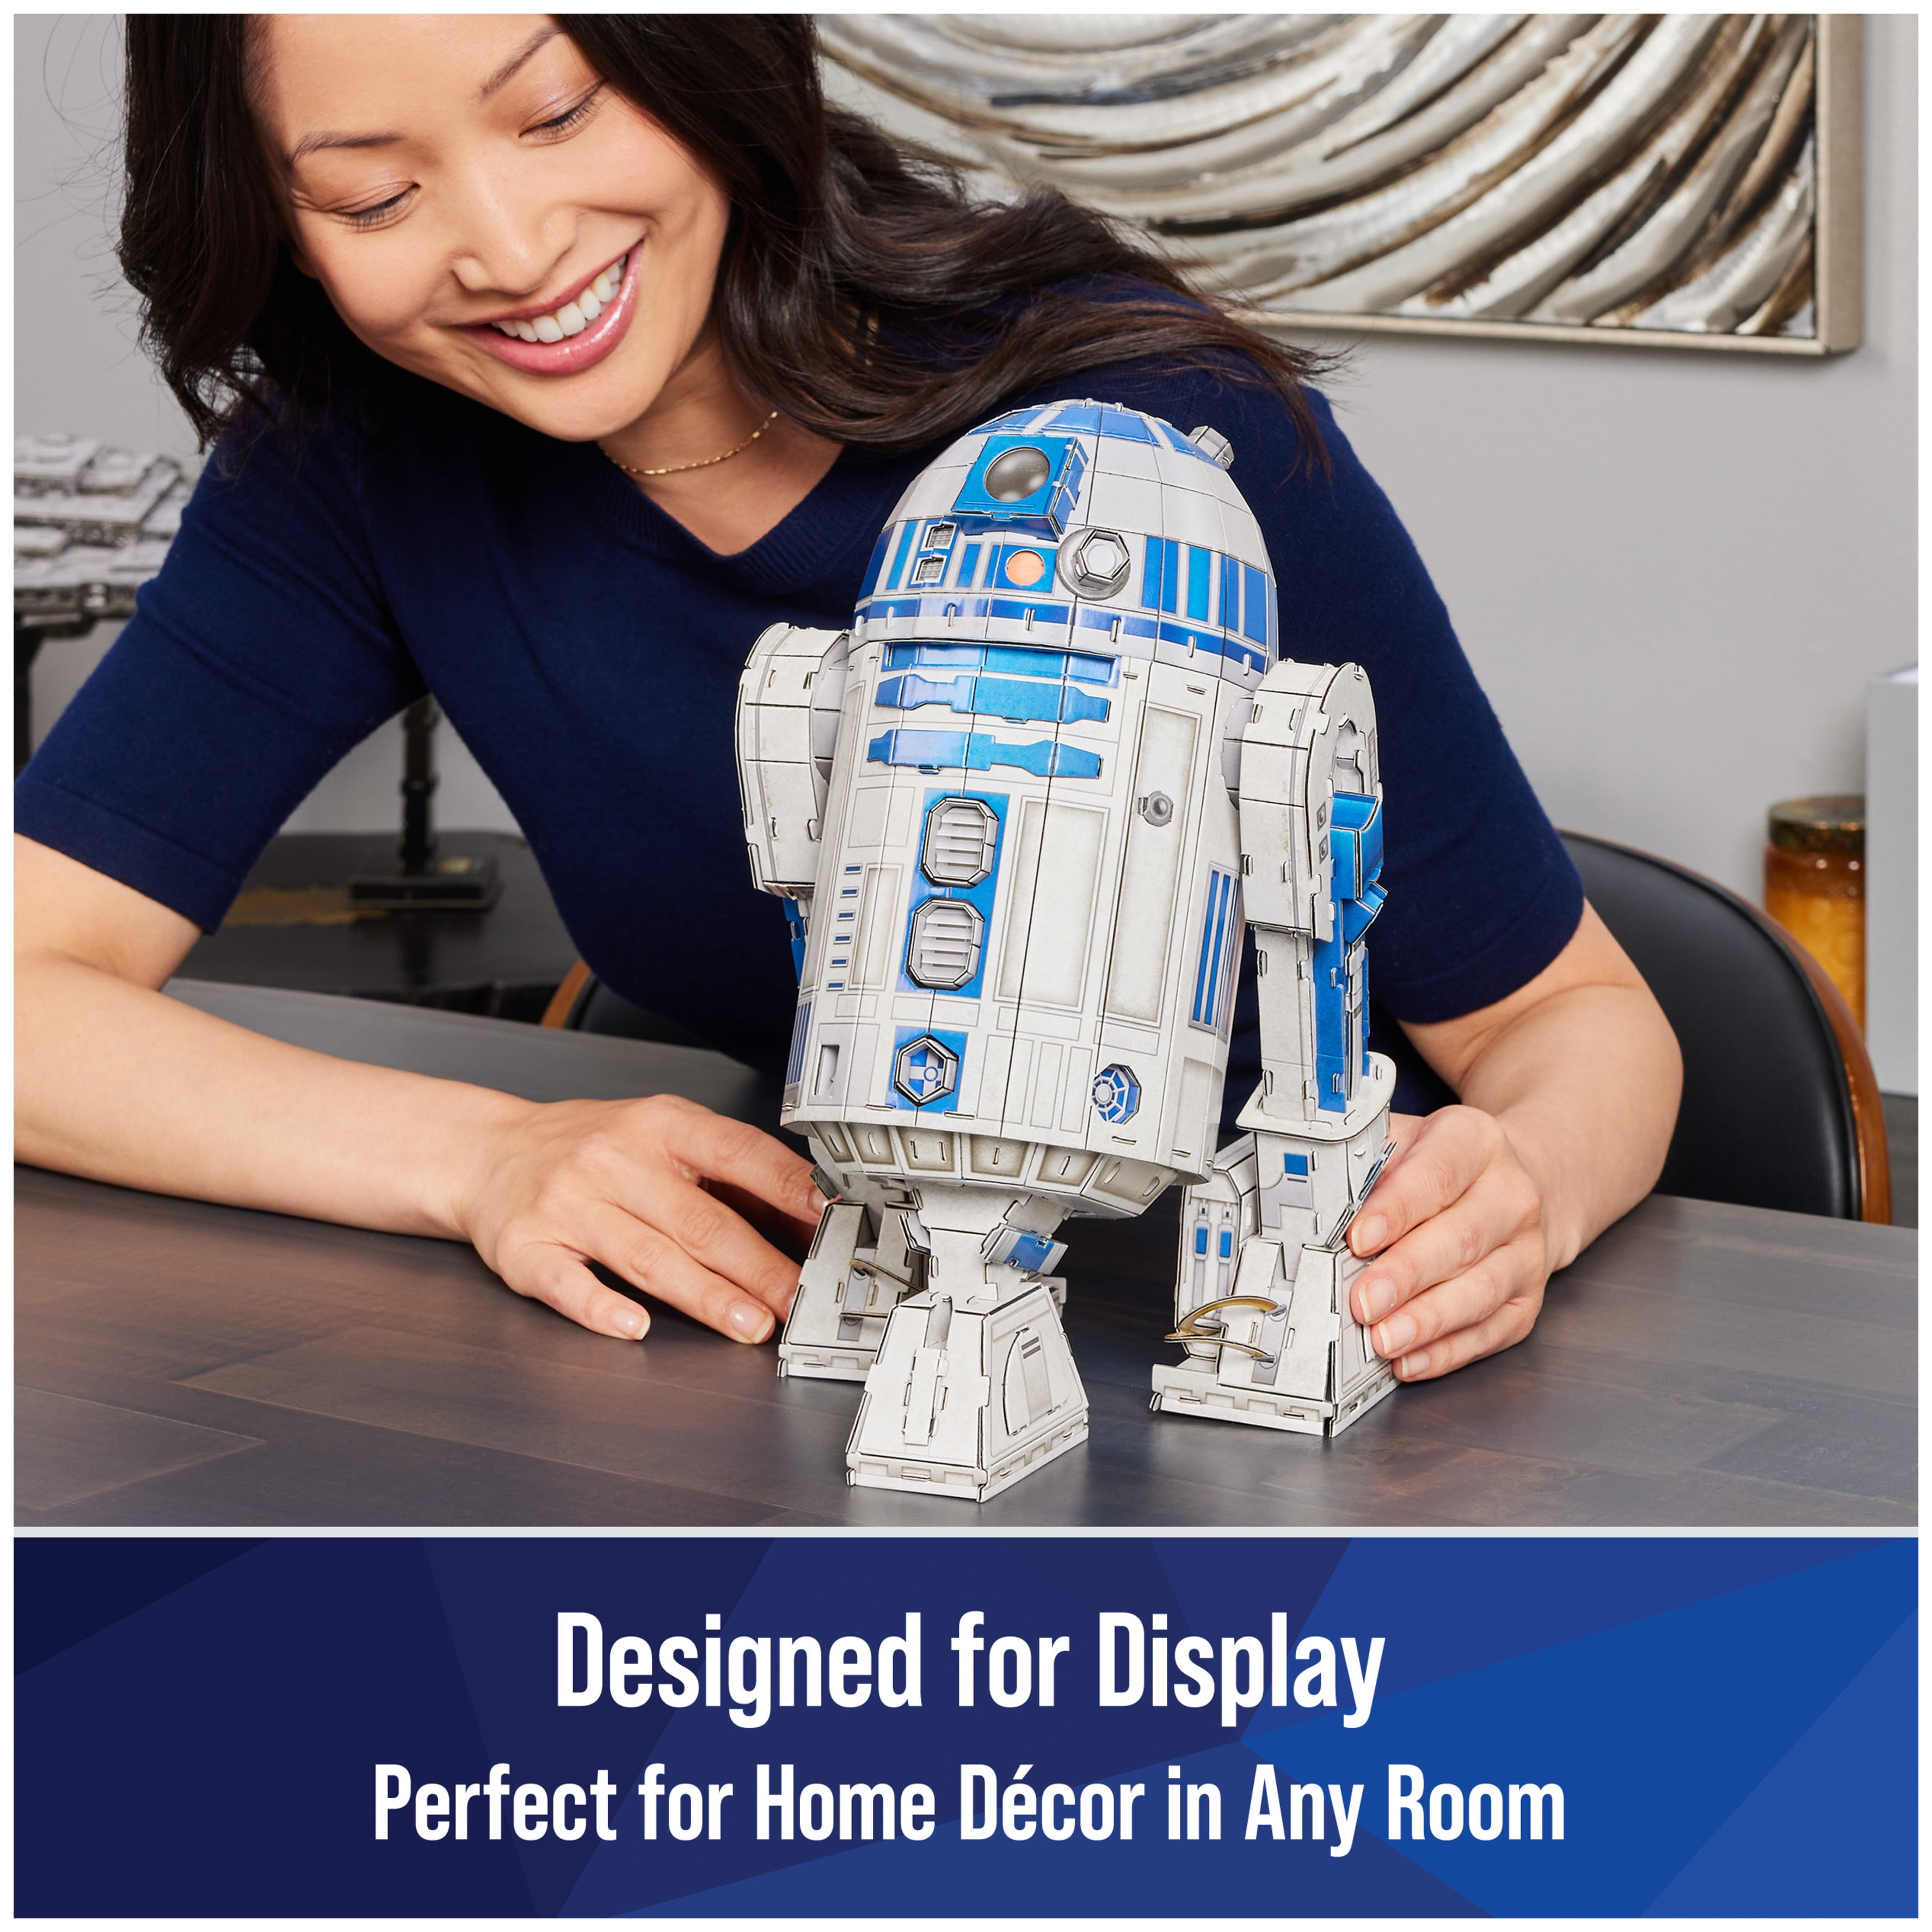 4D Build - R2-D2, Star Wars Puzzle